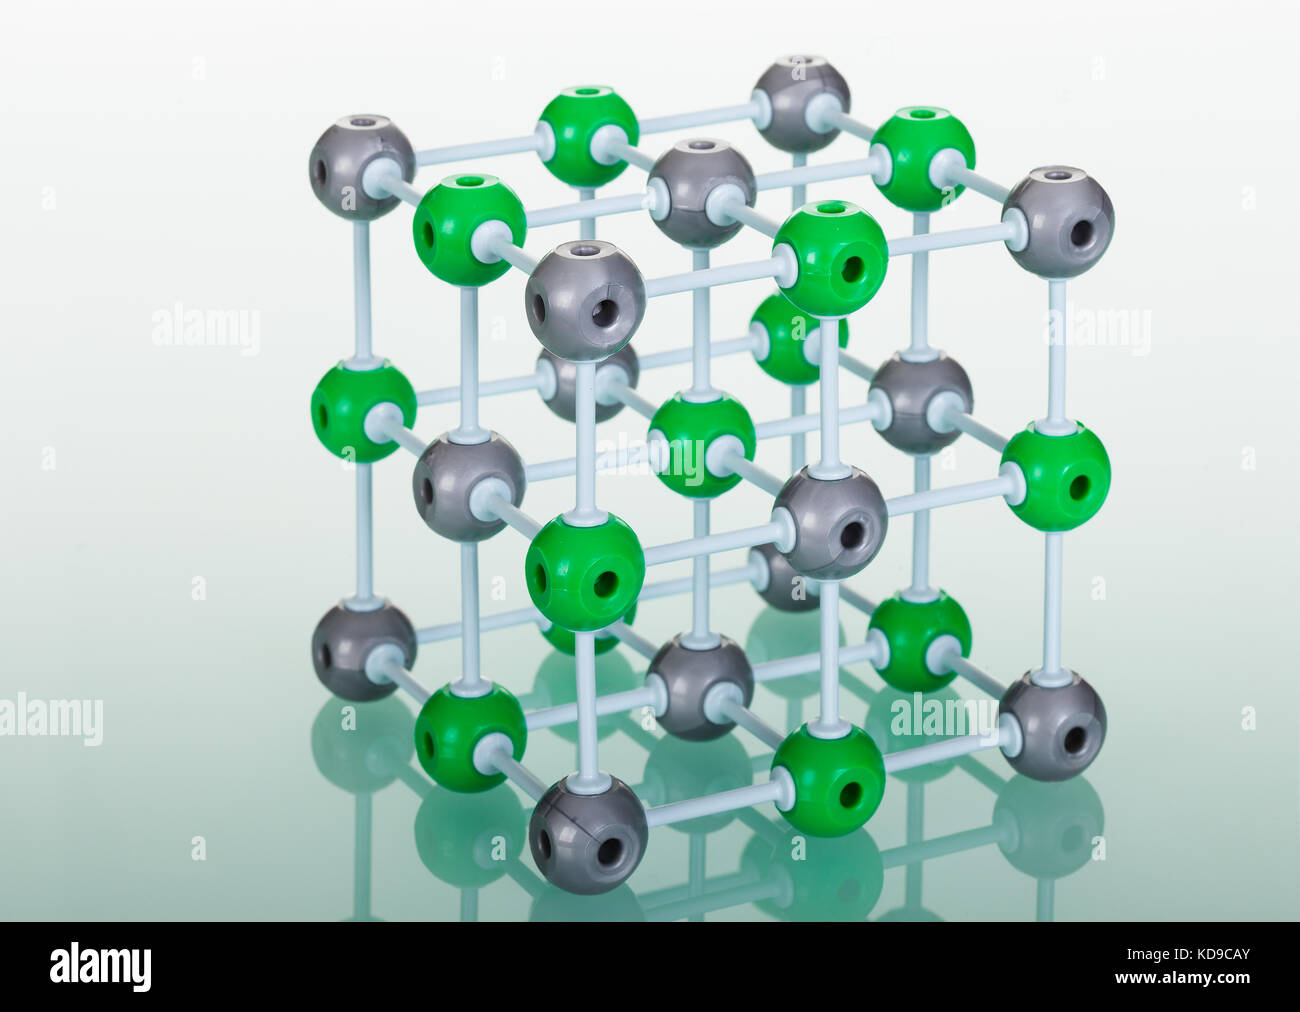 Modell der molekularen Struktur auf Grün reflektierenden Hintergrund Stockfoto